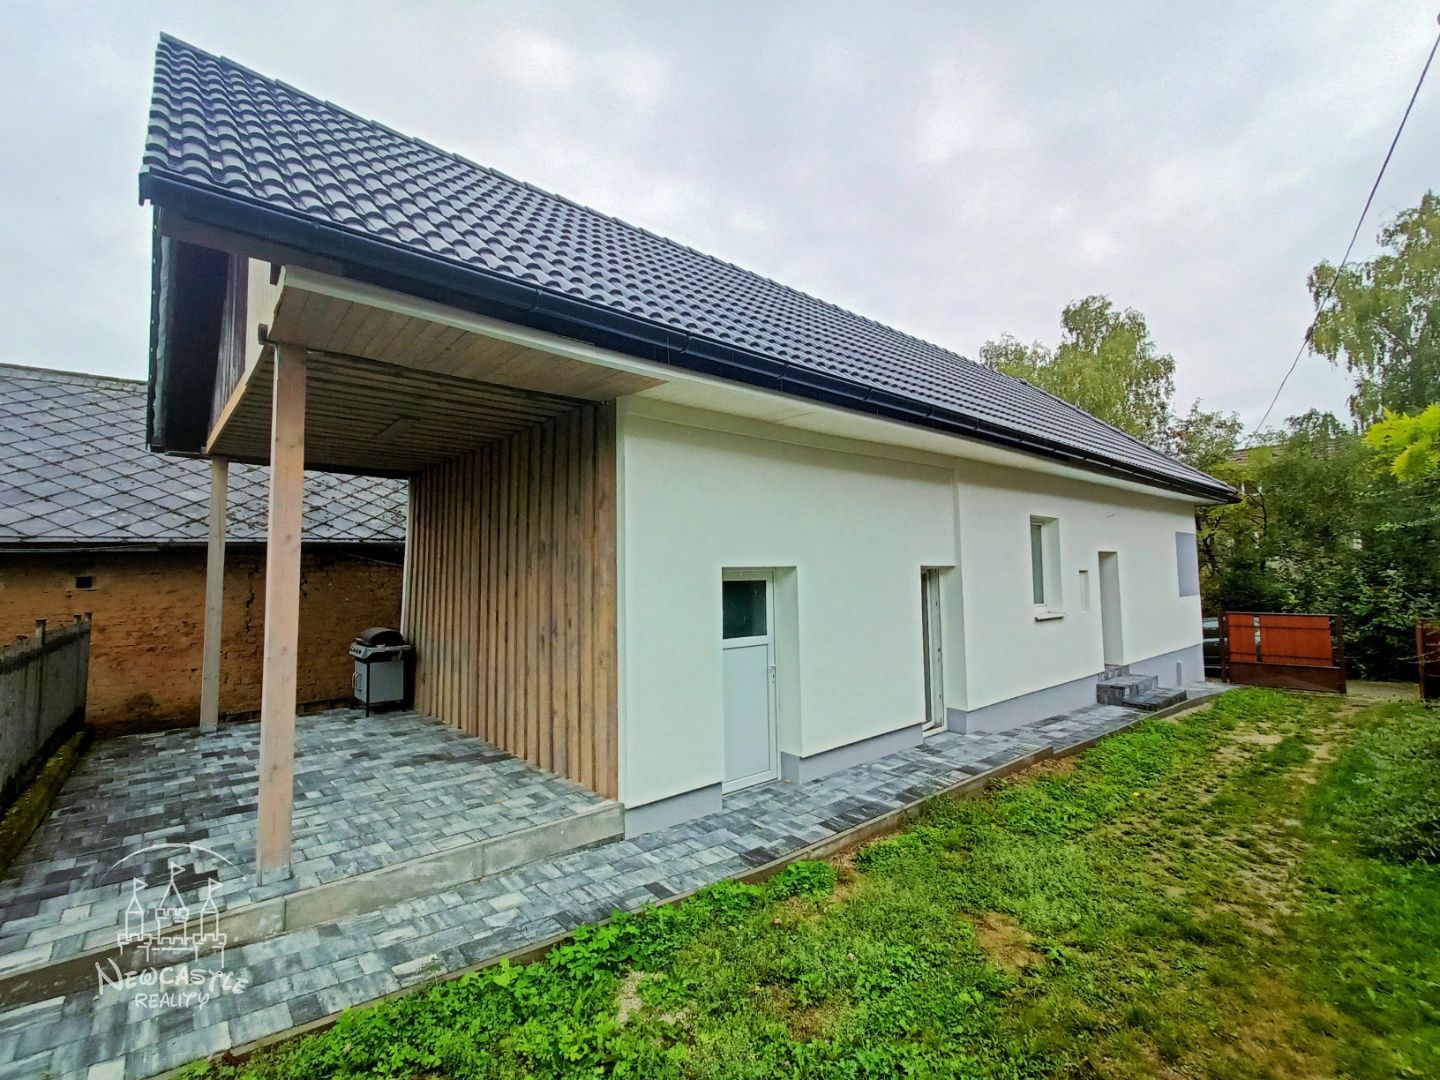 NEWCASTLE⏐Na predaj nový 2 izbový (+ možnosť ďalších izieb na podkroví) rodinný dom v obci Diviakoch nad Nitricou